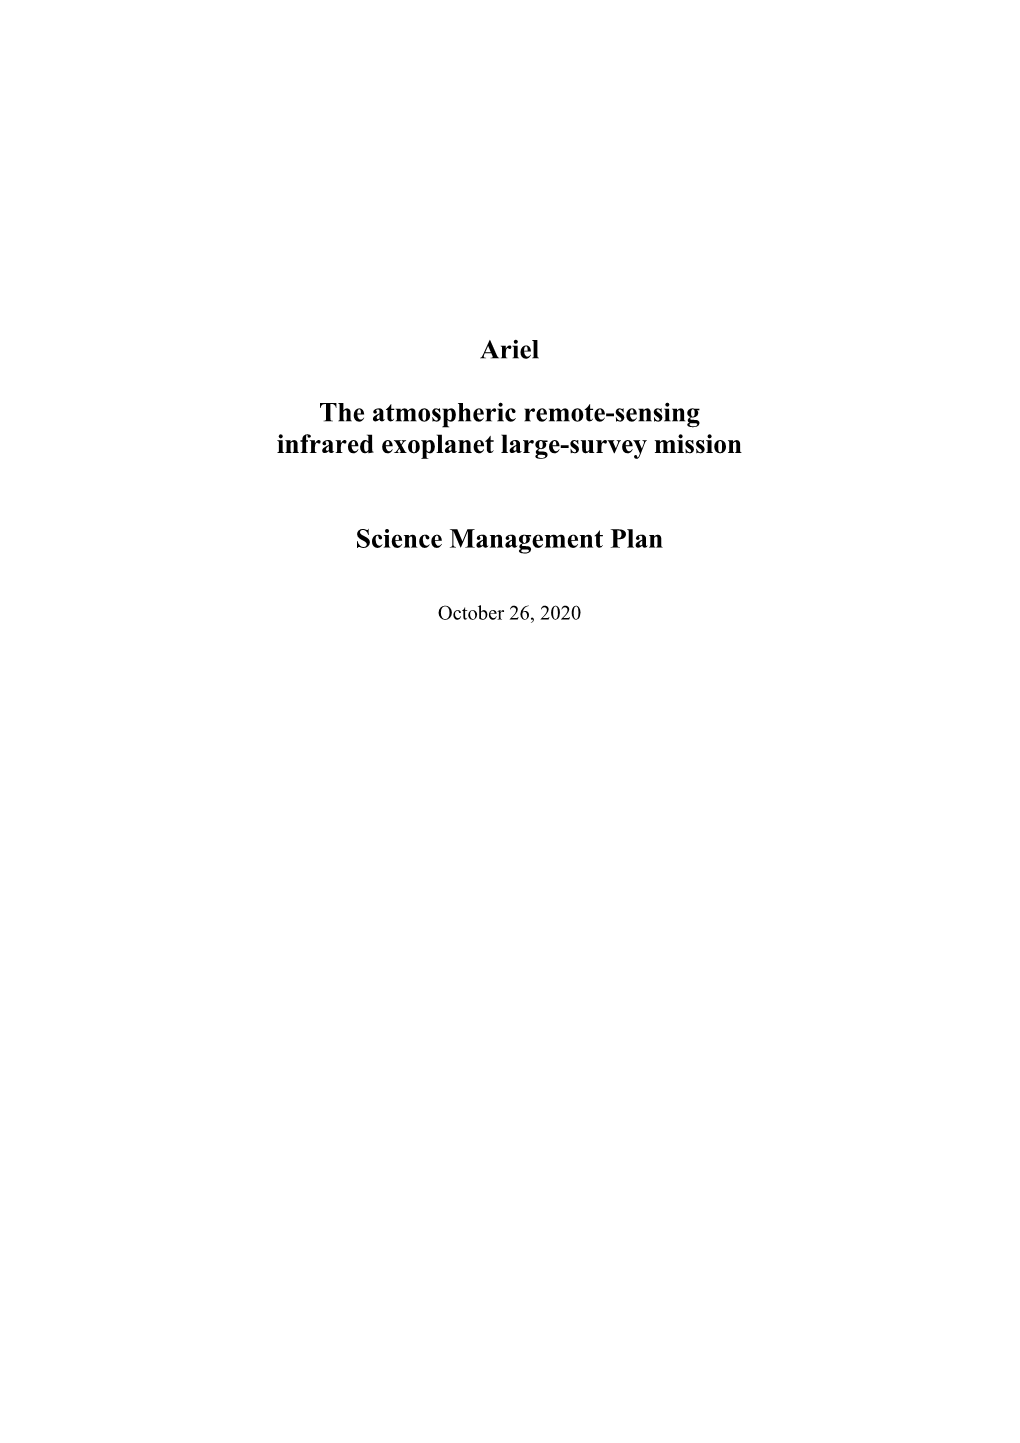 Ariel Science Management Plan